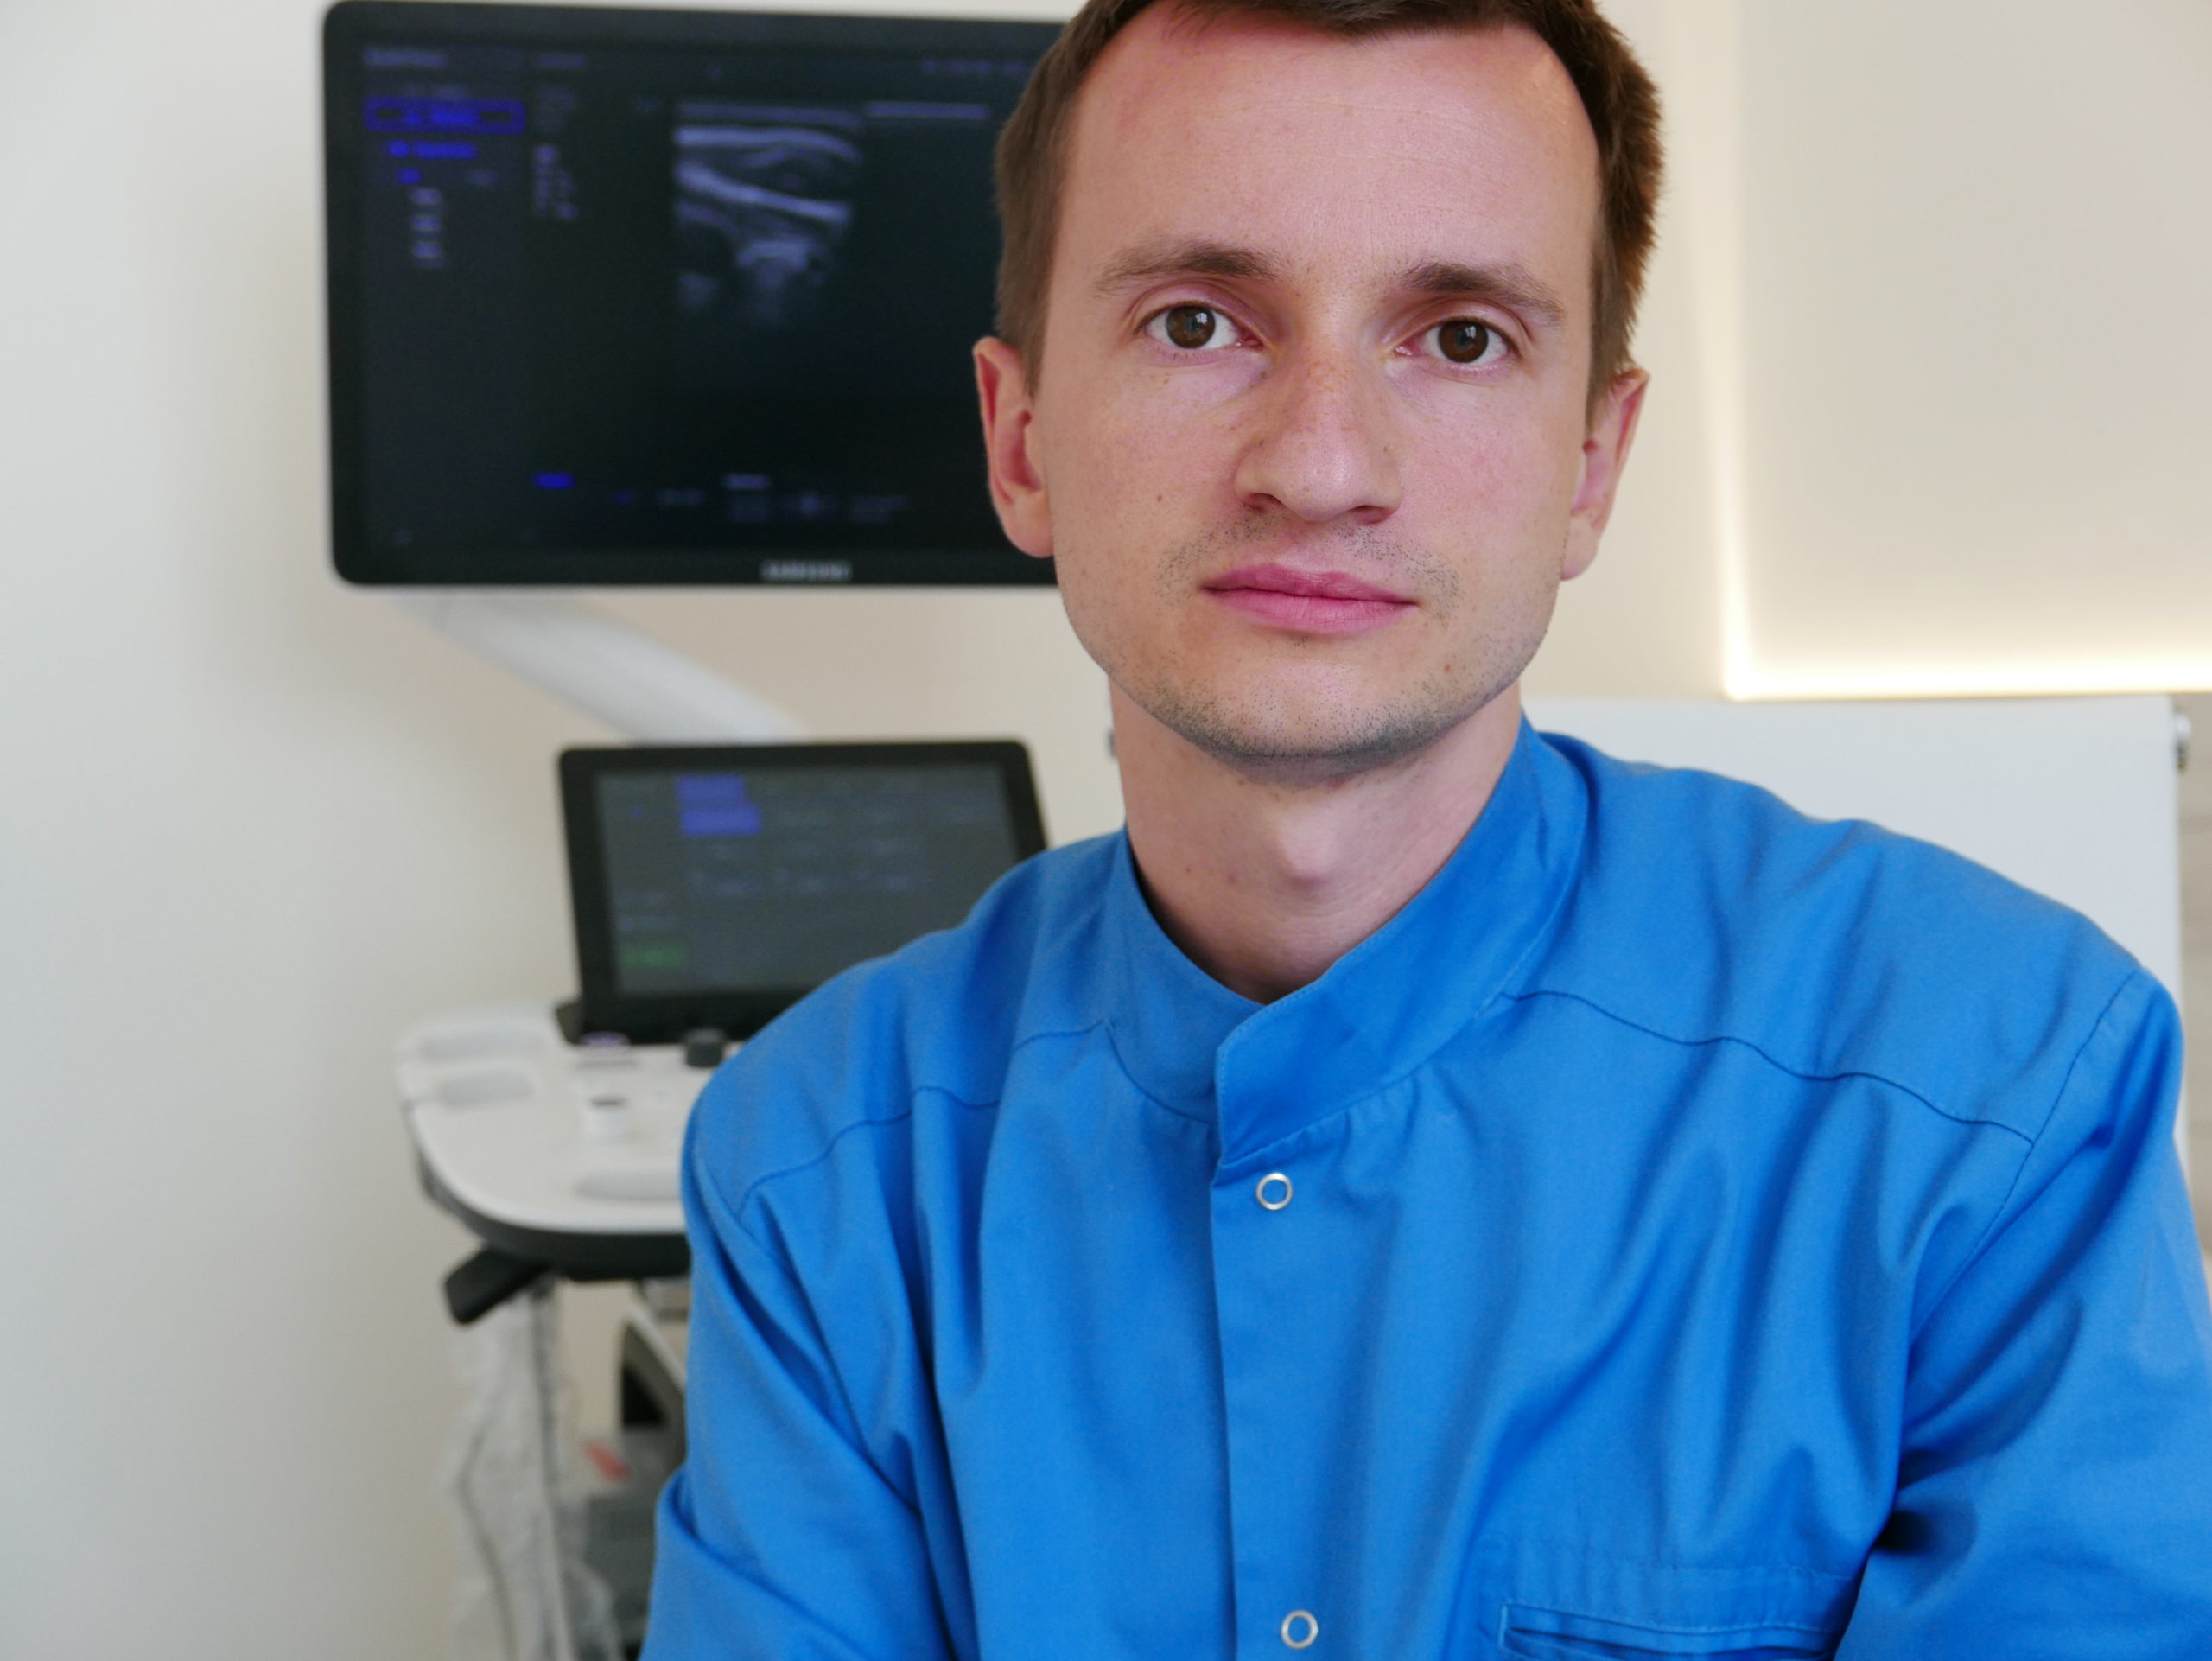 Poradnia endokrynologiczna ma nowego specjalistę – lek. Witold Markiewicz – endokrynolog w OMNI Clinic Wrocław